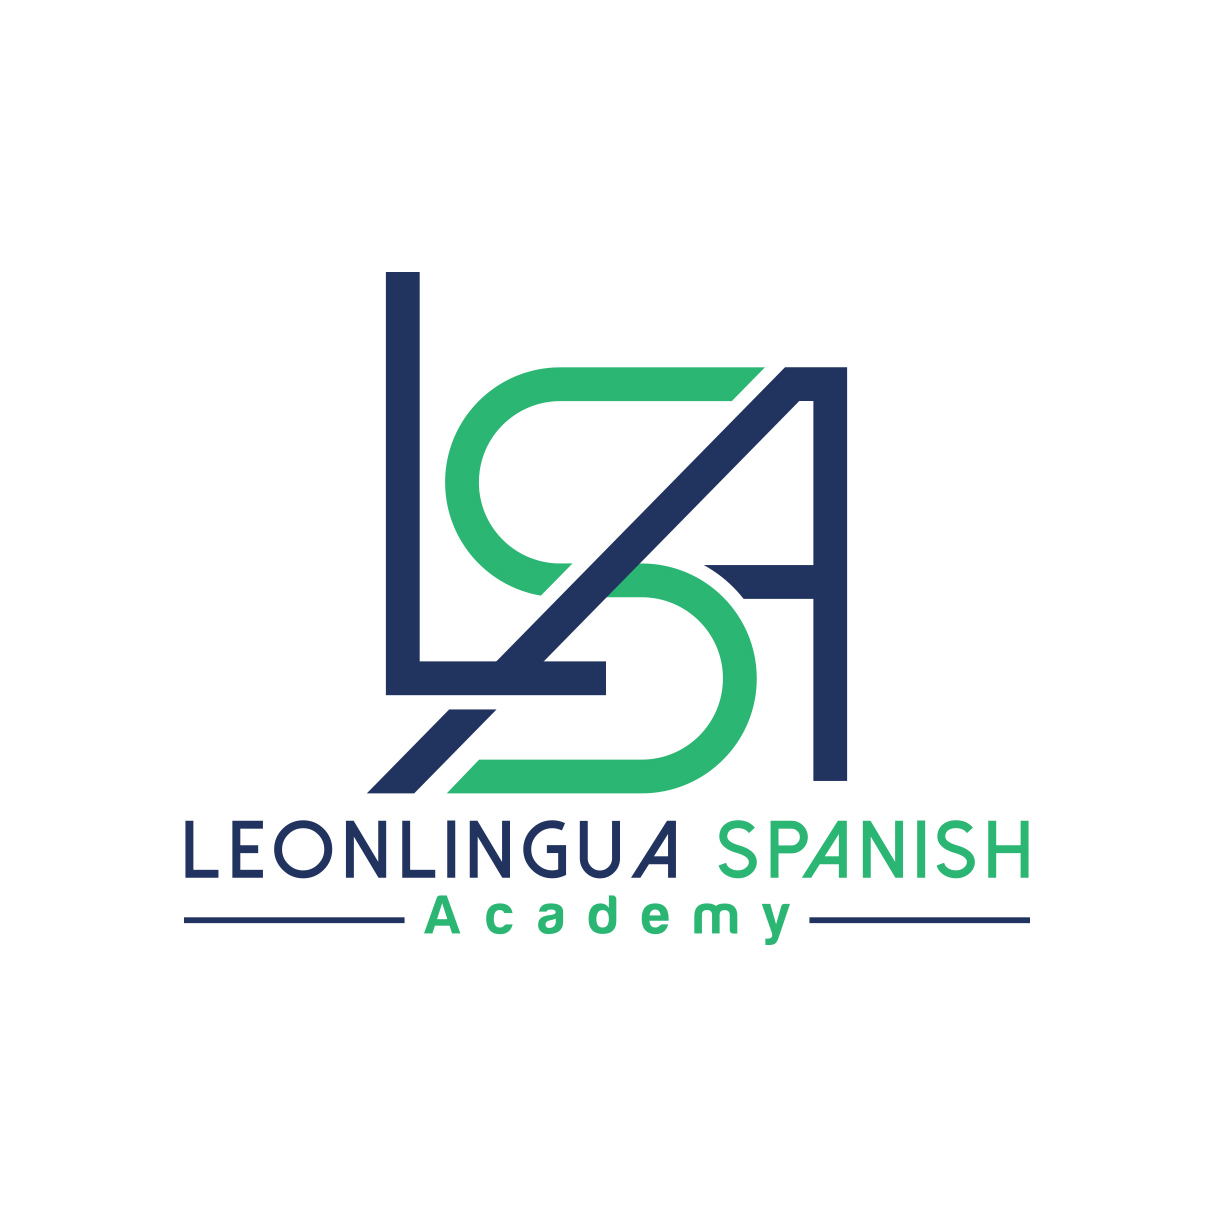 Leonlingua Spanish Academy logo